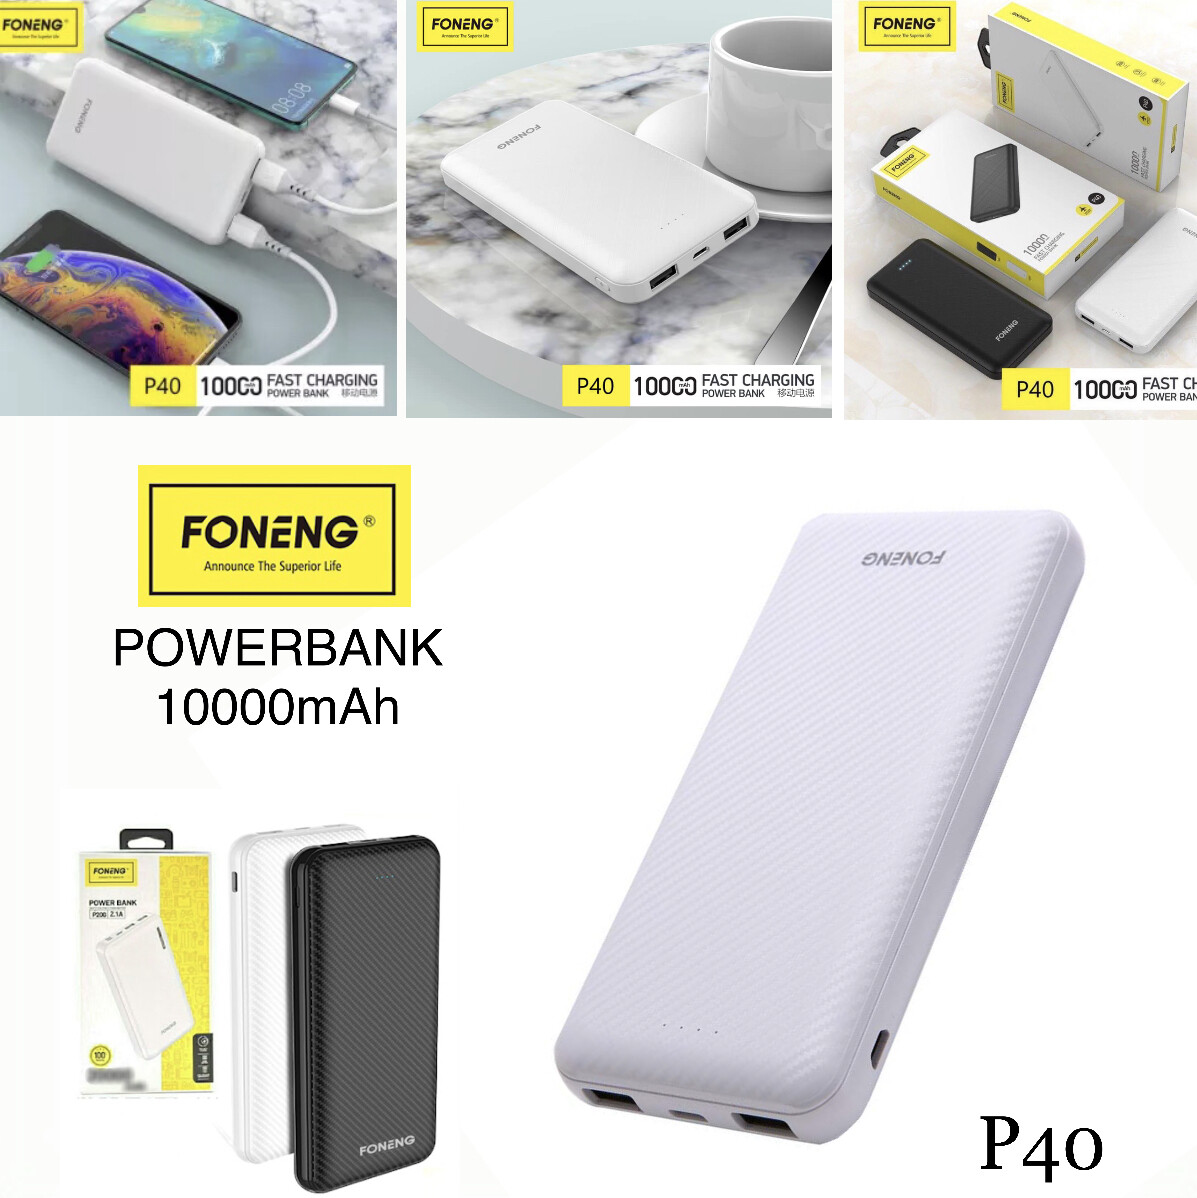 Power Bank 10000mAh P40